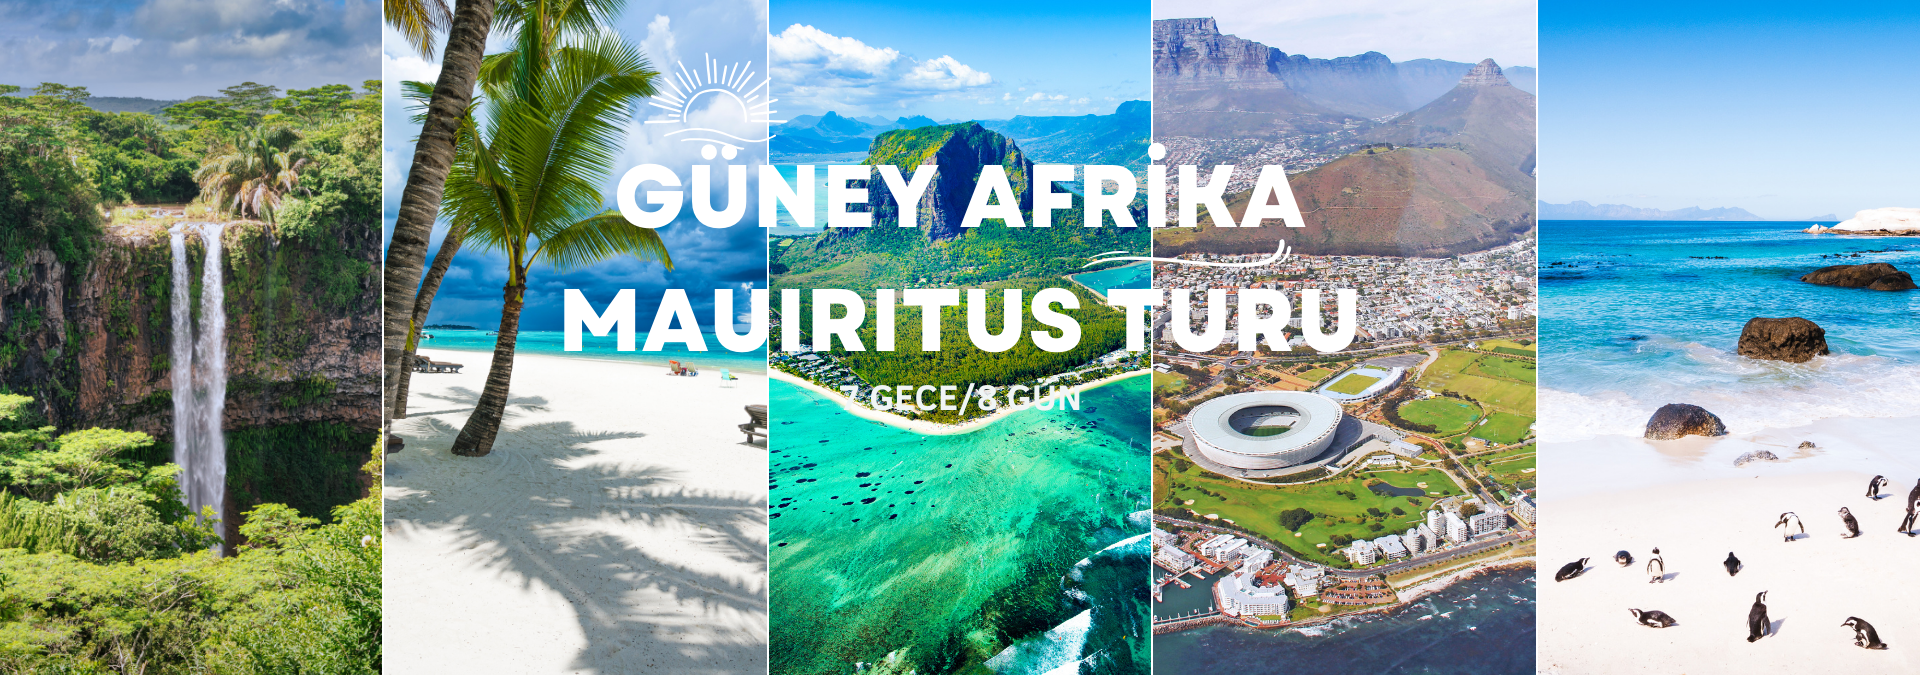 Mauritius Güney Afrika Kültür Doğa ve Gezi Turu